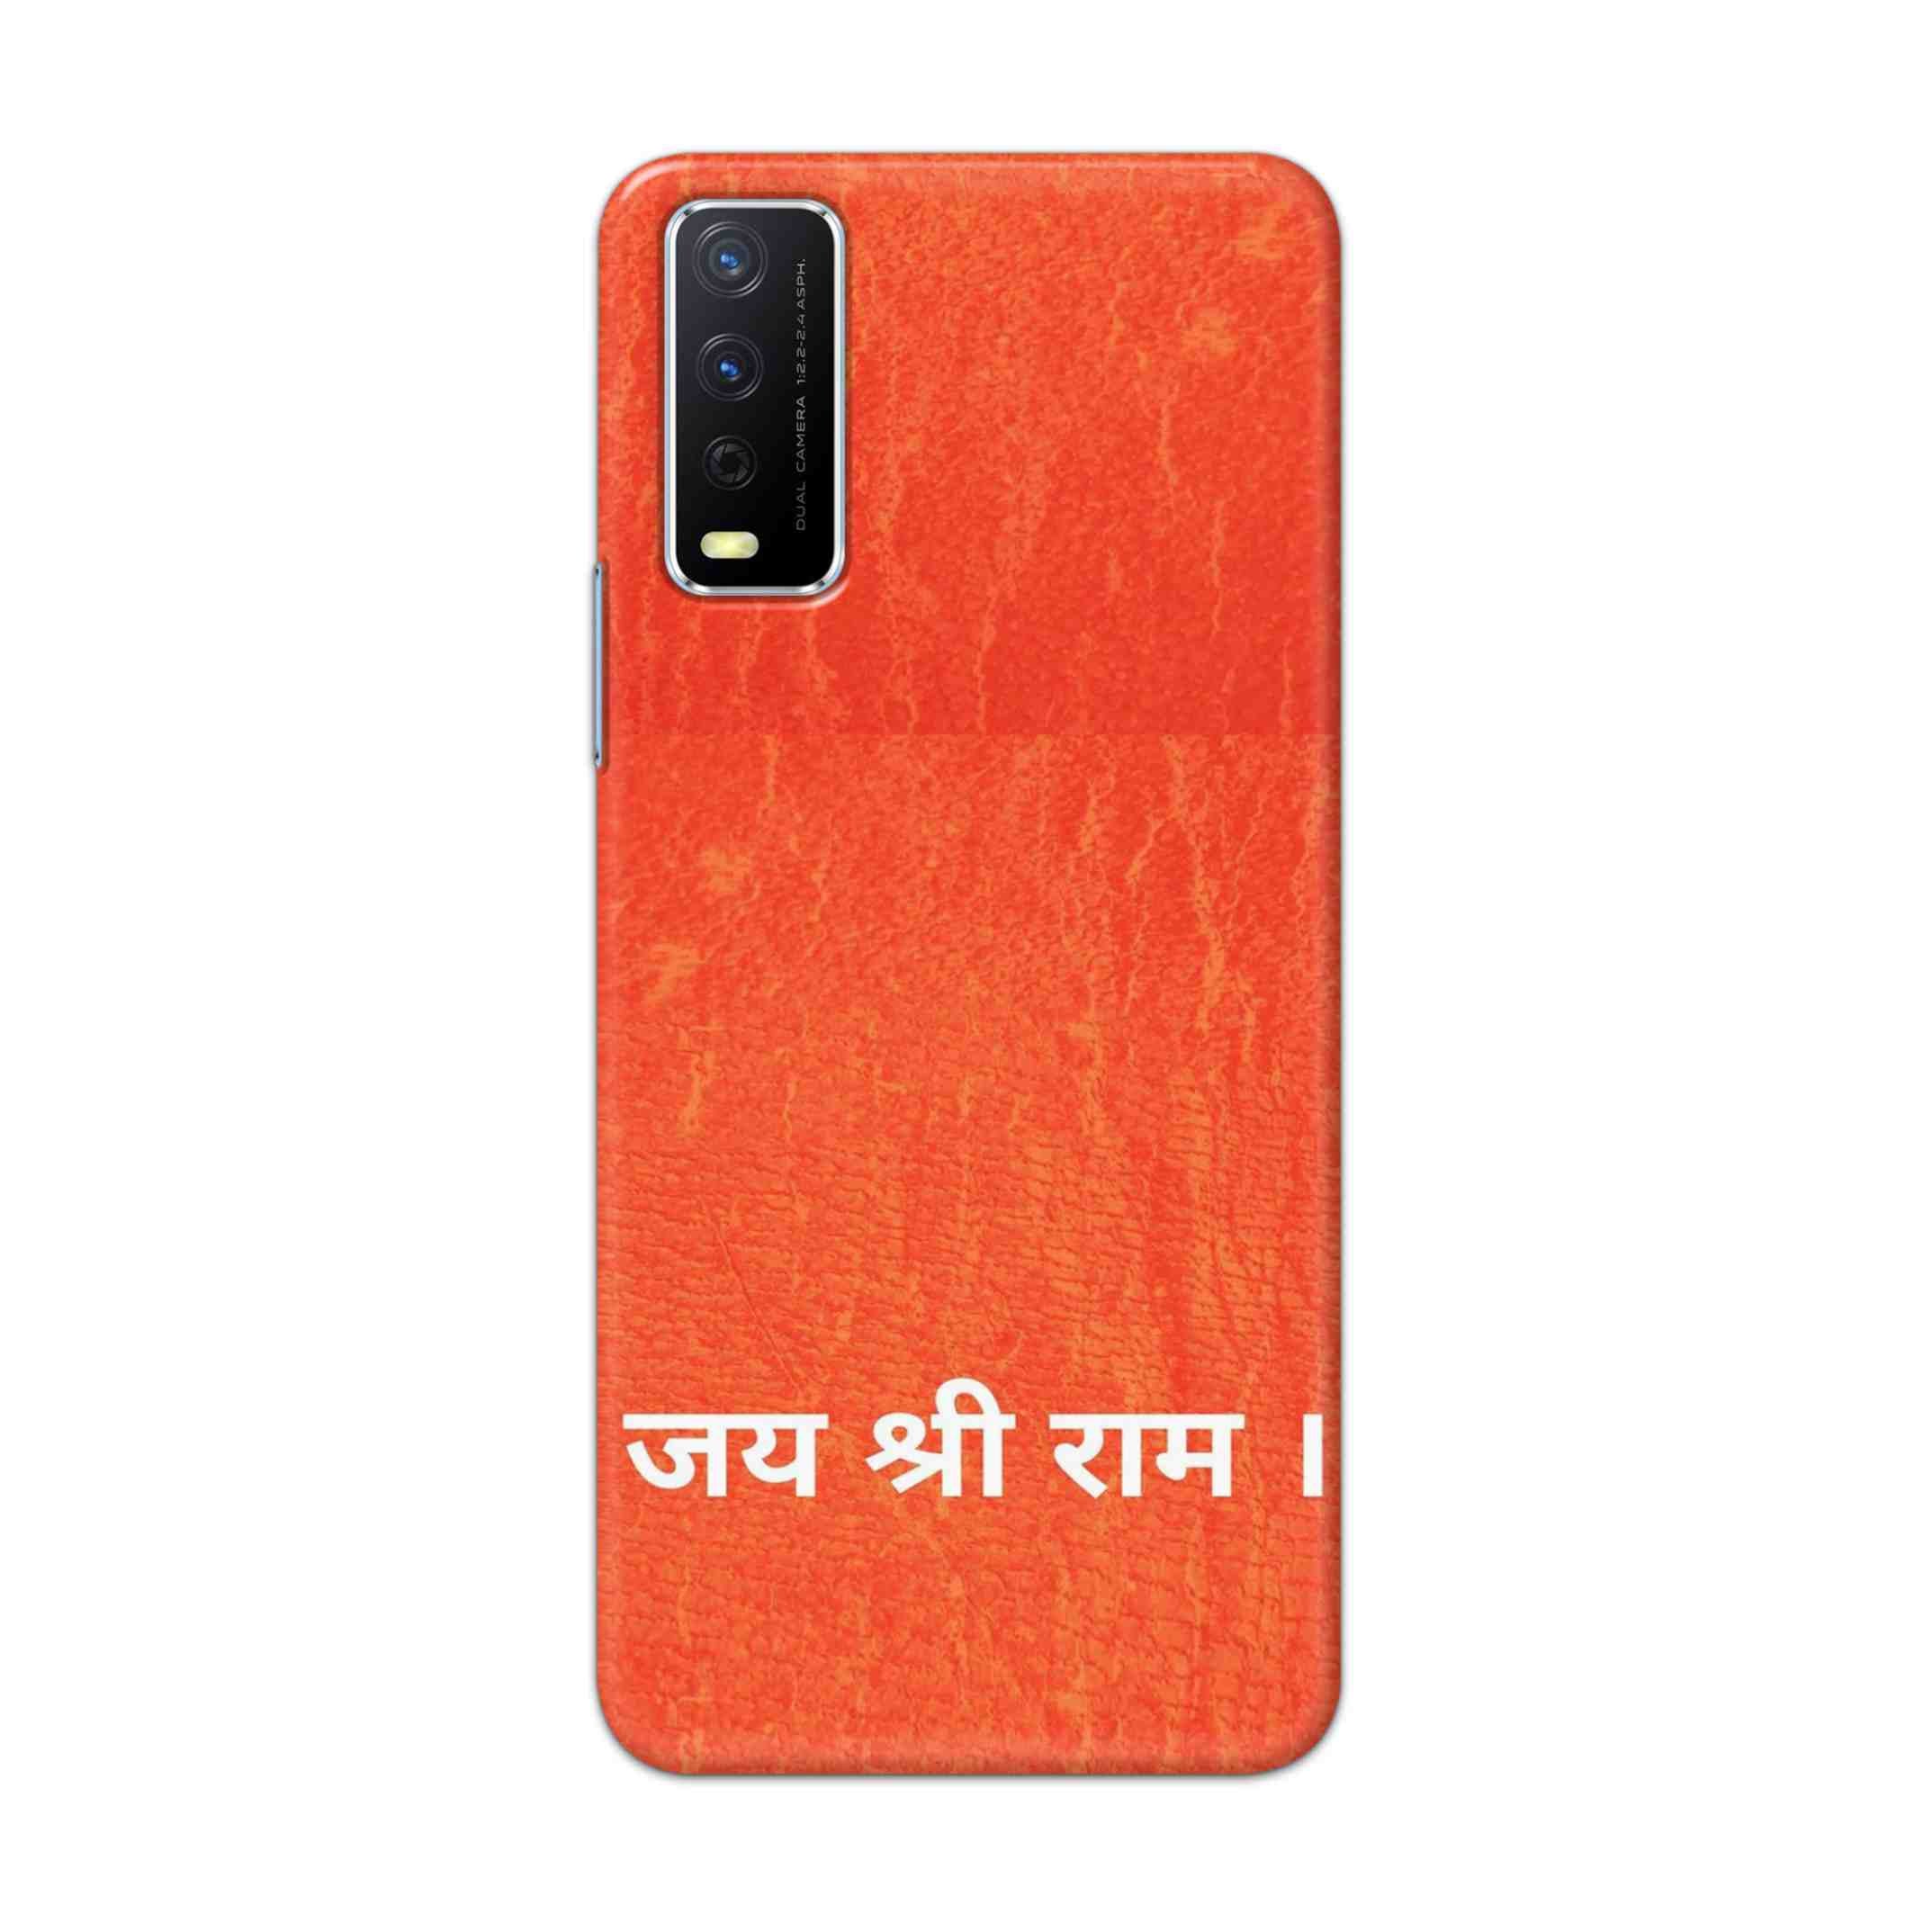 Buy Jai Shree Ram Hard Back Mobile Phone Case Cover For Vivo Y12s Online